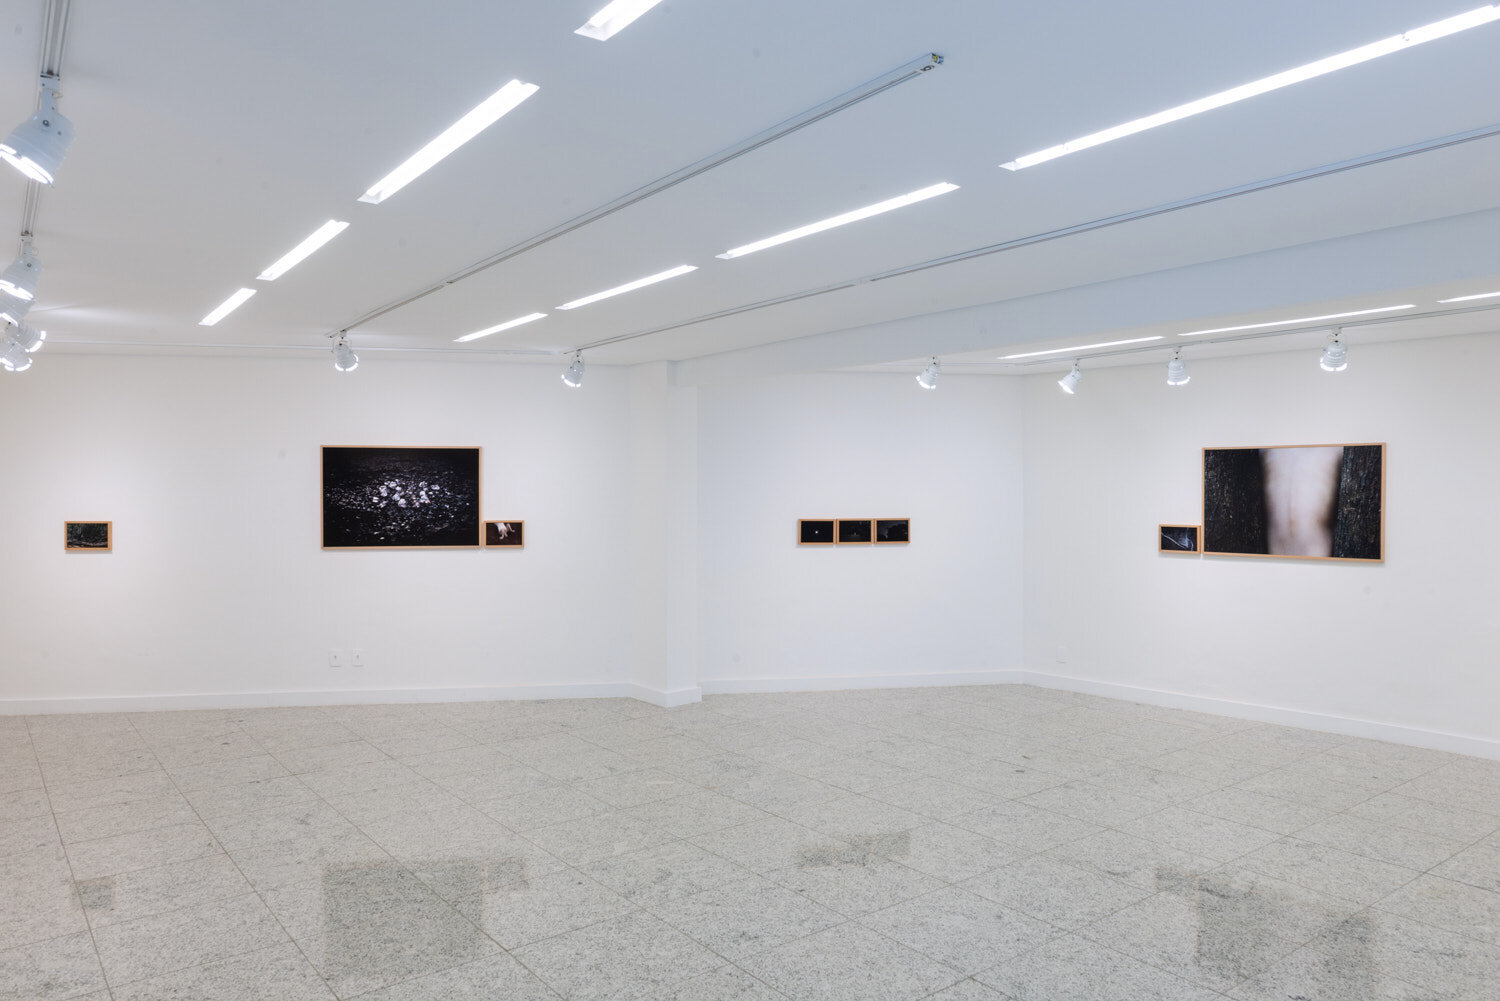  Vista da exposição  É o coração de tudo –  Galeria Ibeu, Rio de Janeiro, 2019. 